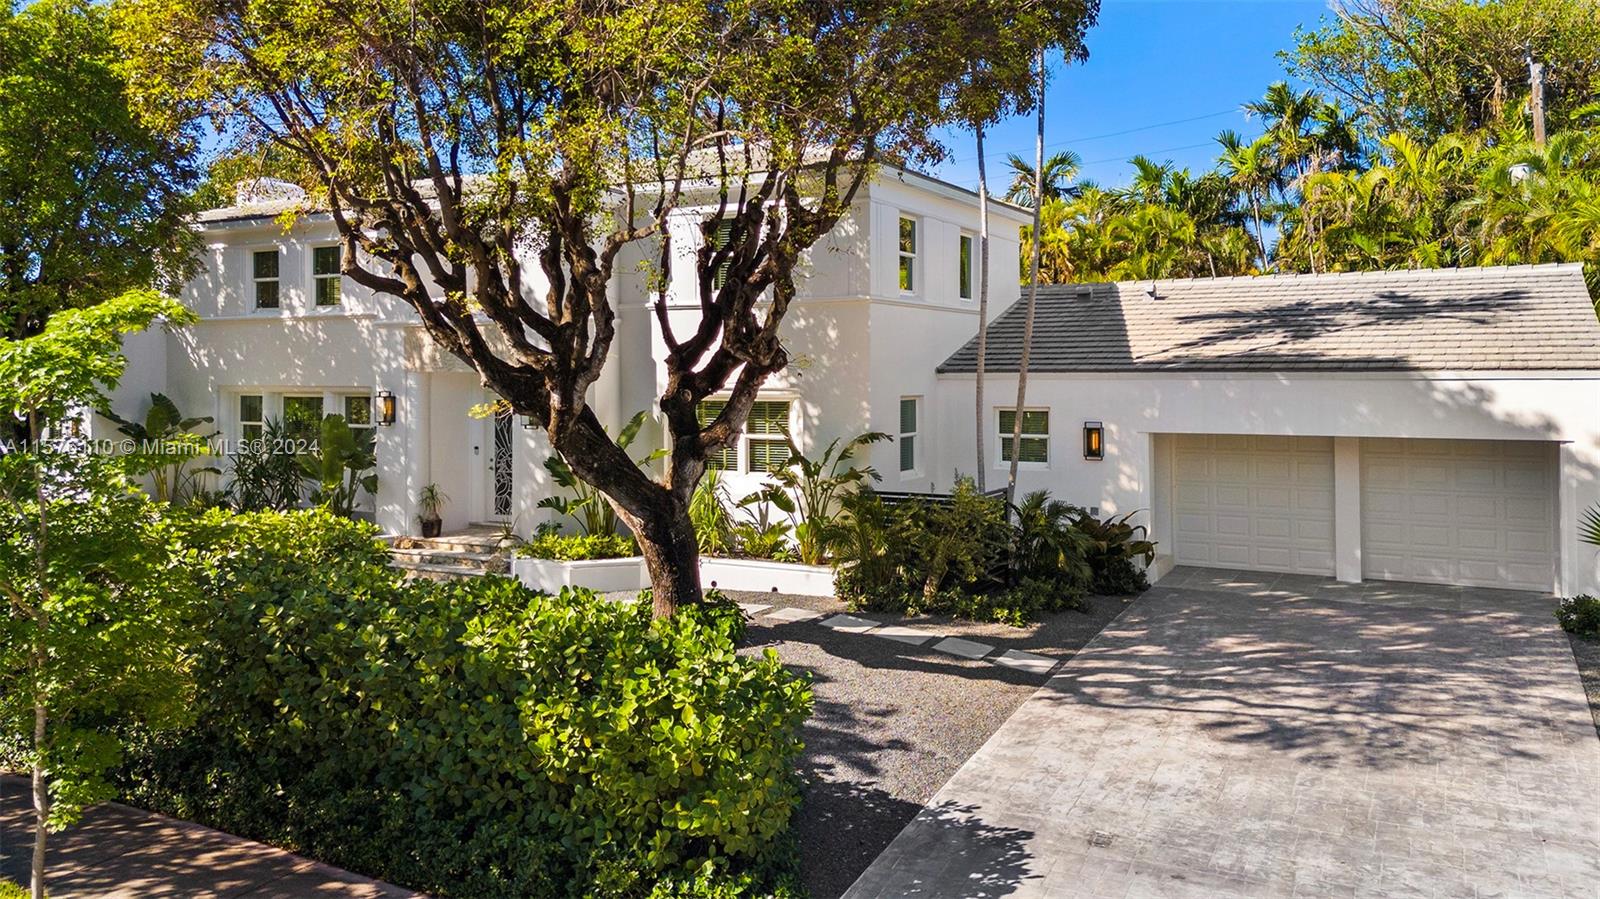 Rental Property at 2922 Flamingo Dr, Miami Beach, Miami-Dade County, Florida - Bedrooms: 5 
Bathrooms: 6  - $35,000 MO.